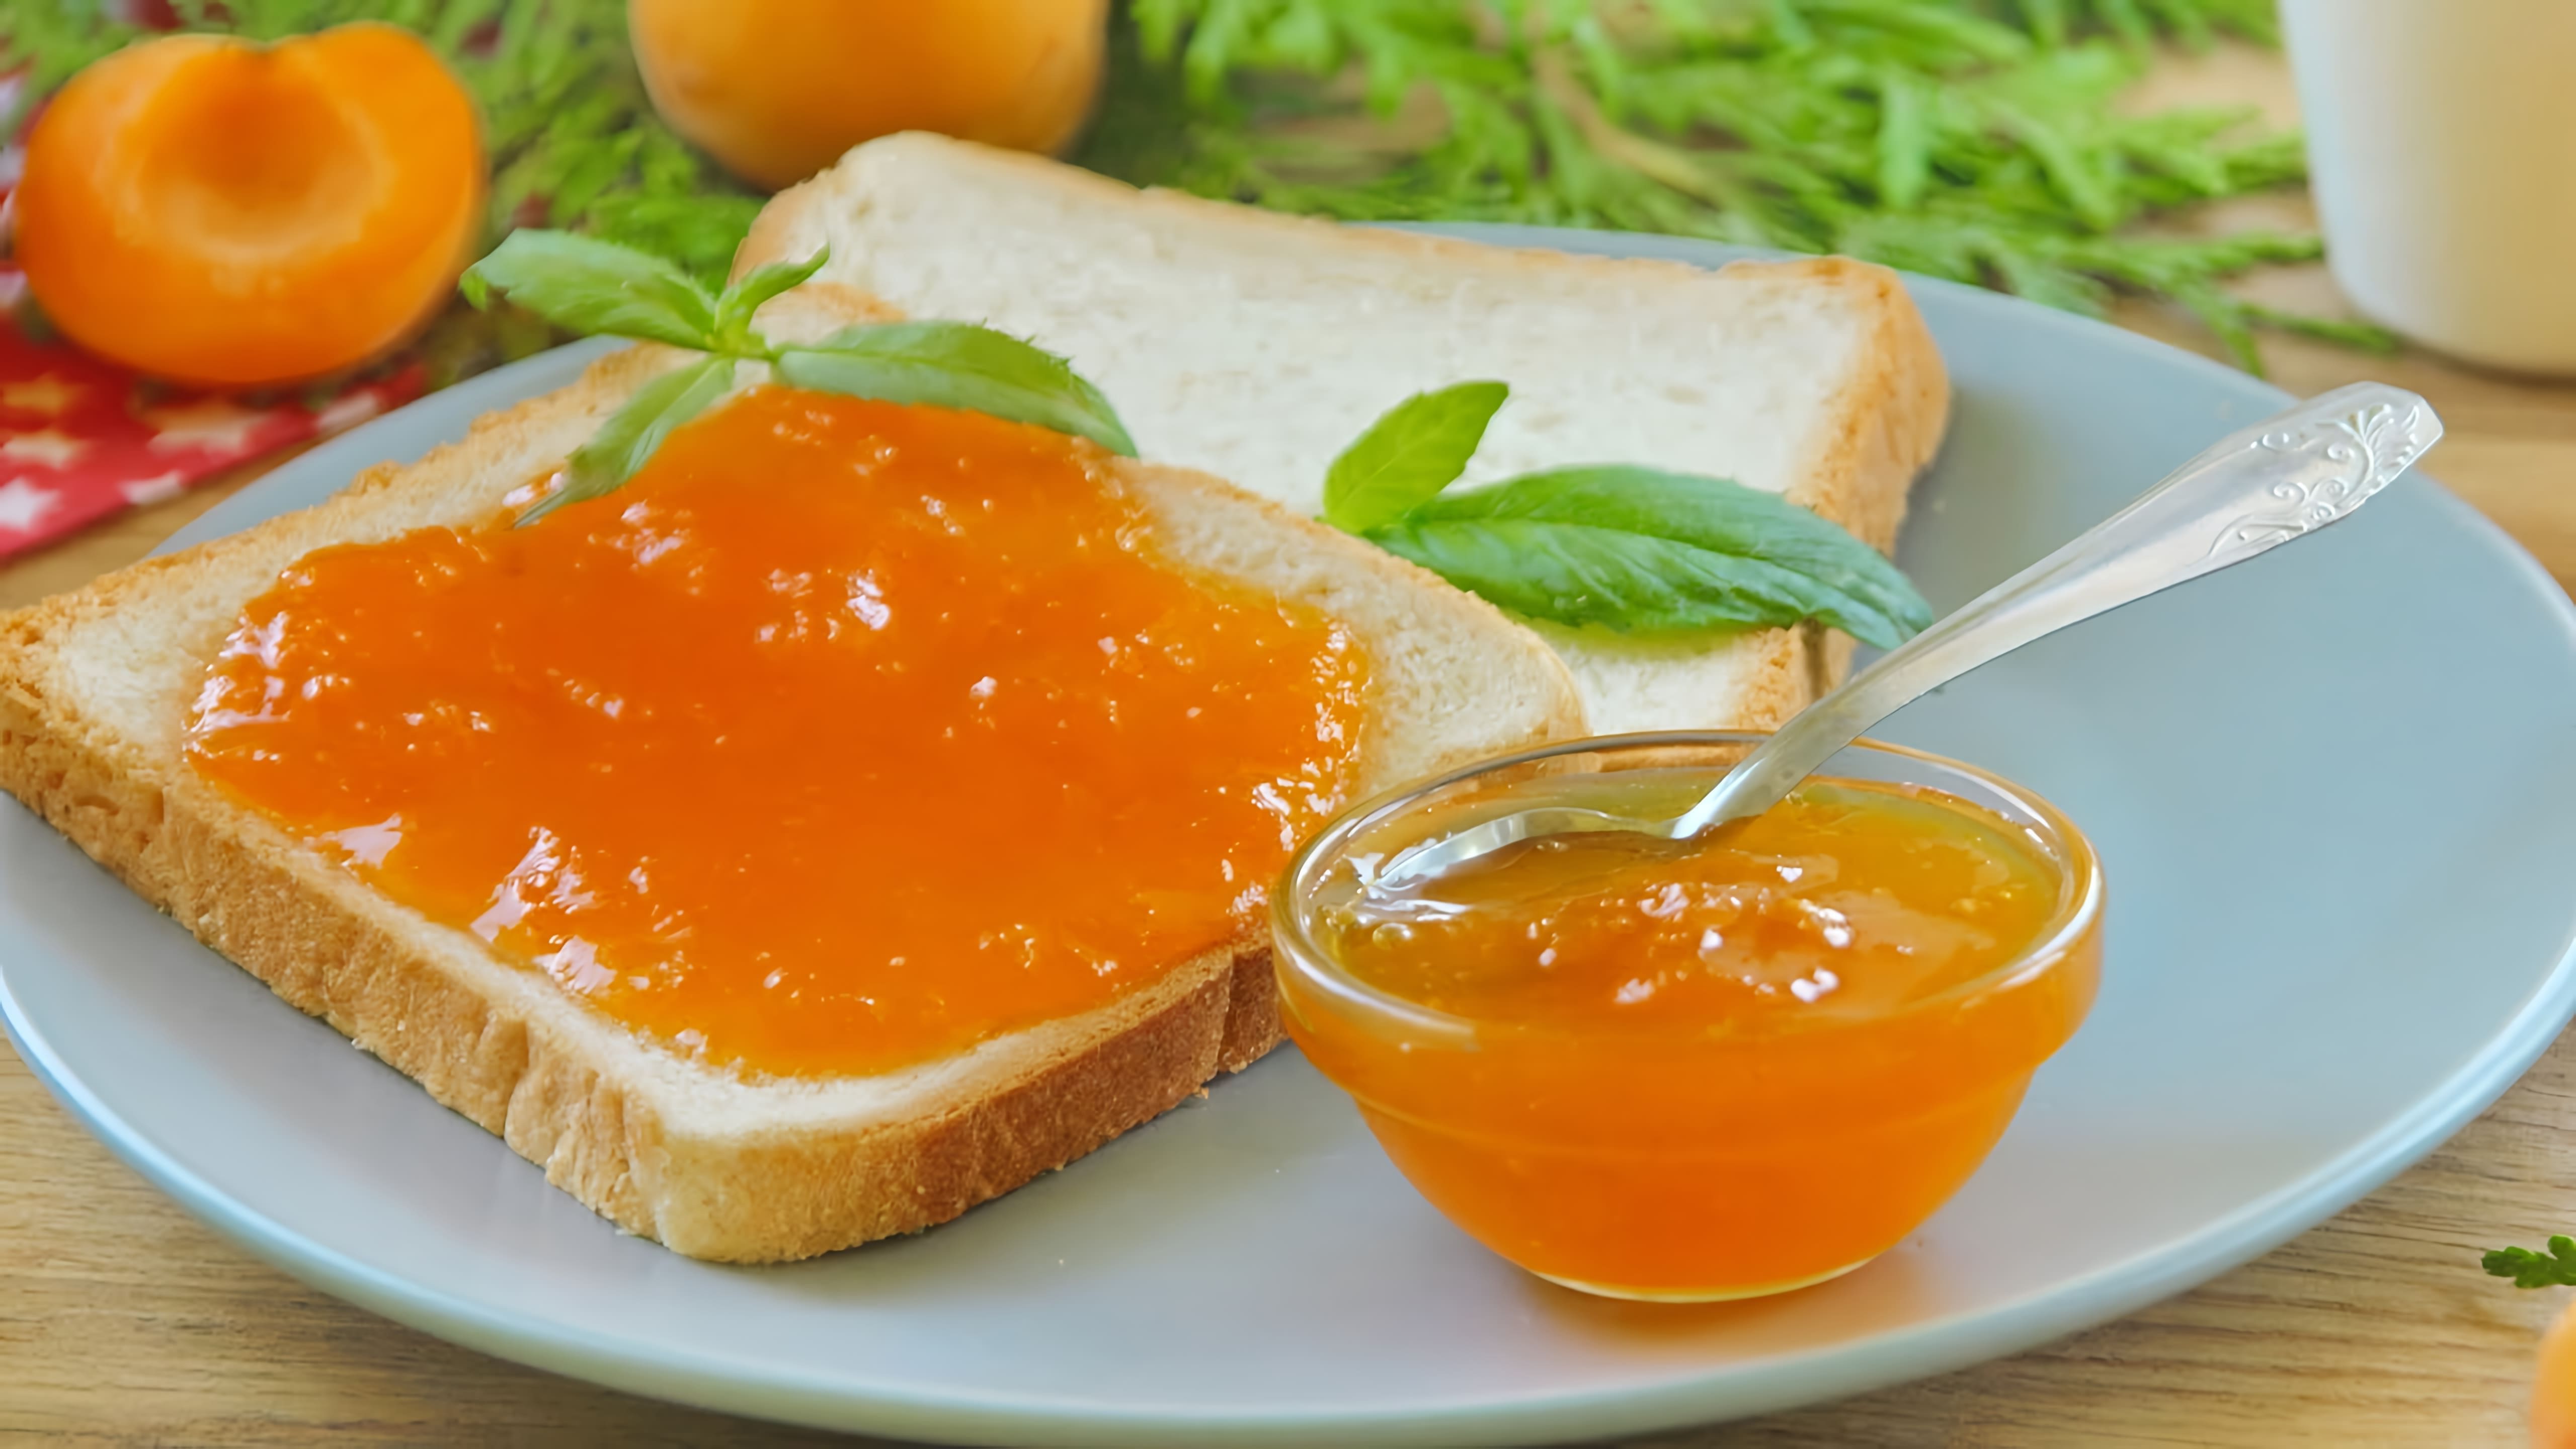 В этом видео демонстрируется рецепт приготовления густого абрикосового джема без использования загустителей, таких как пектин, желатин или агар